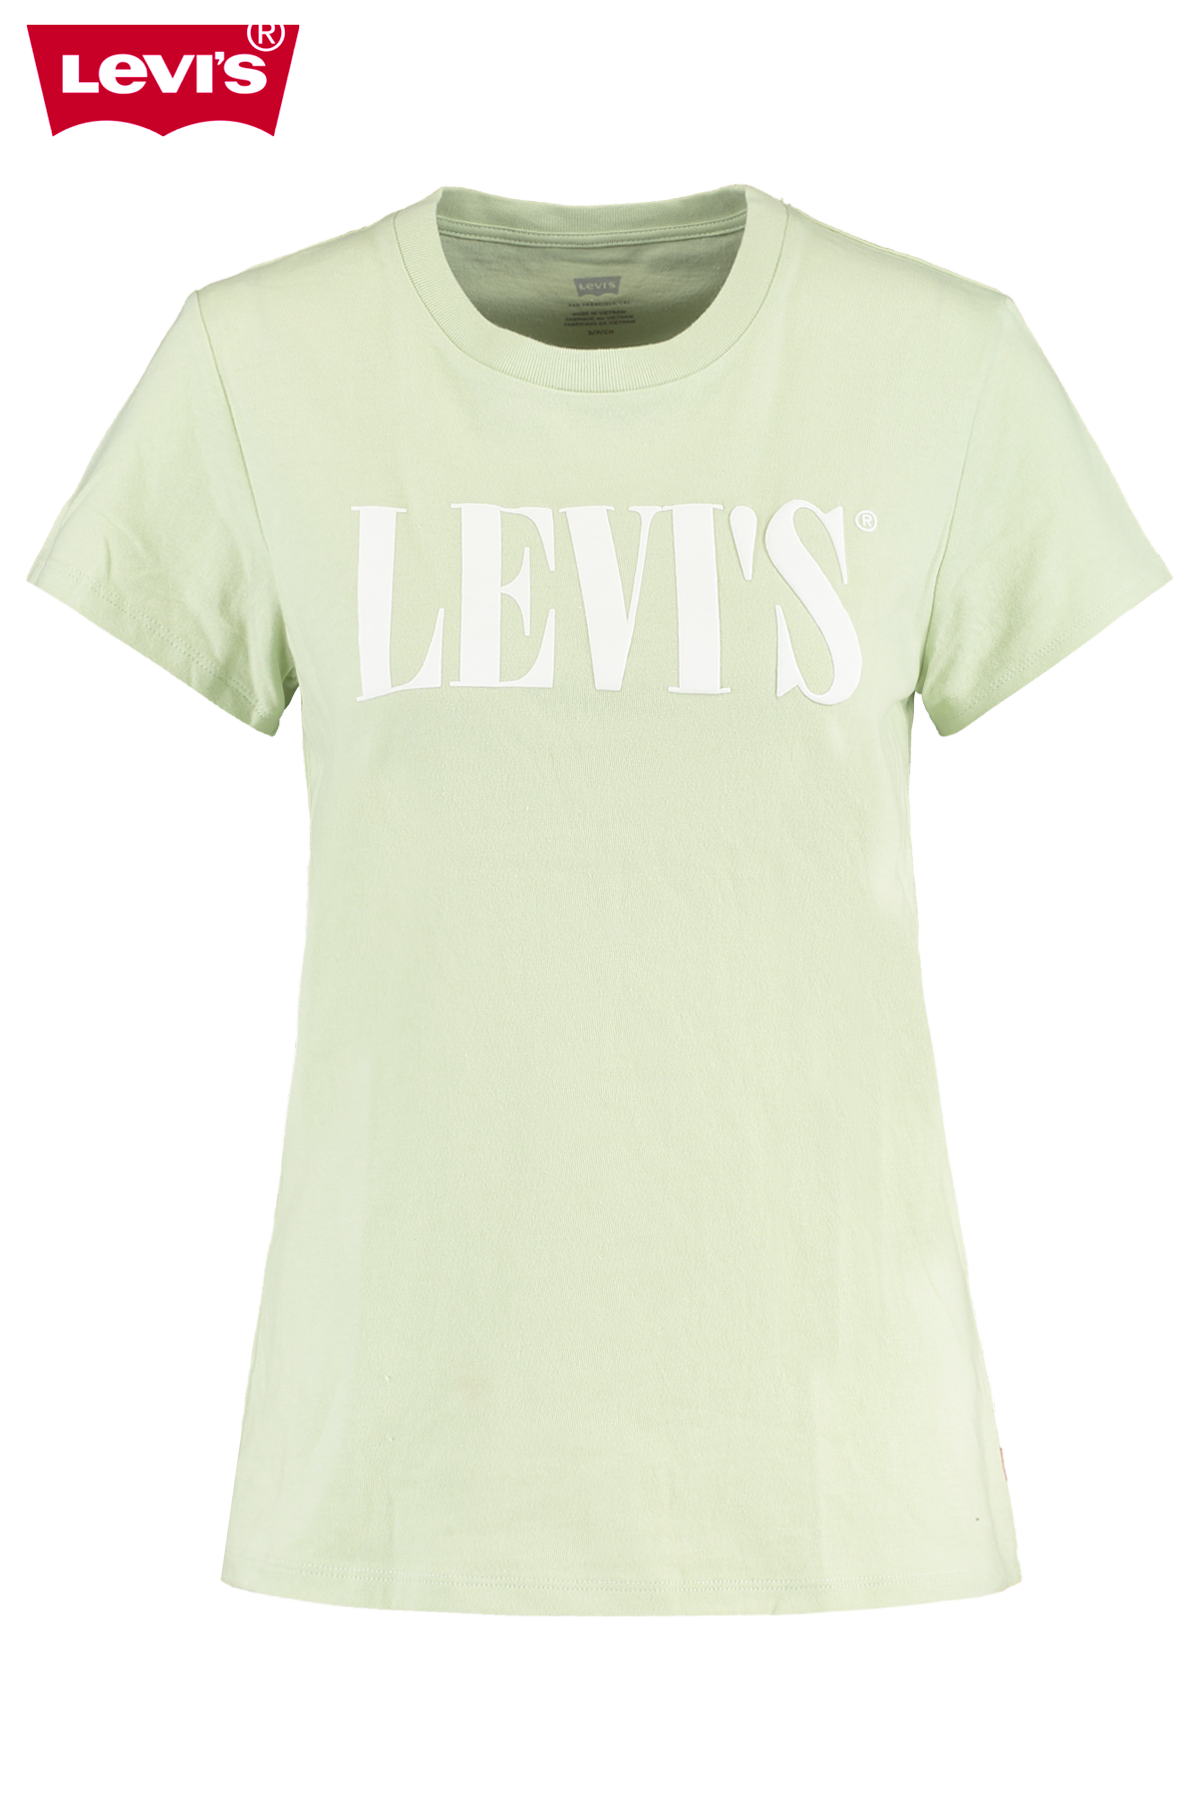 levis t shirt